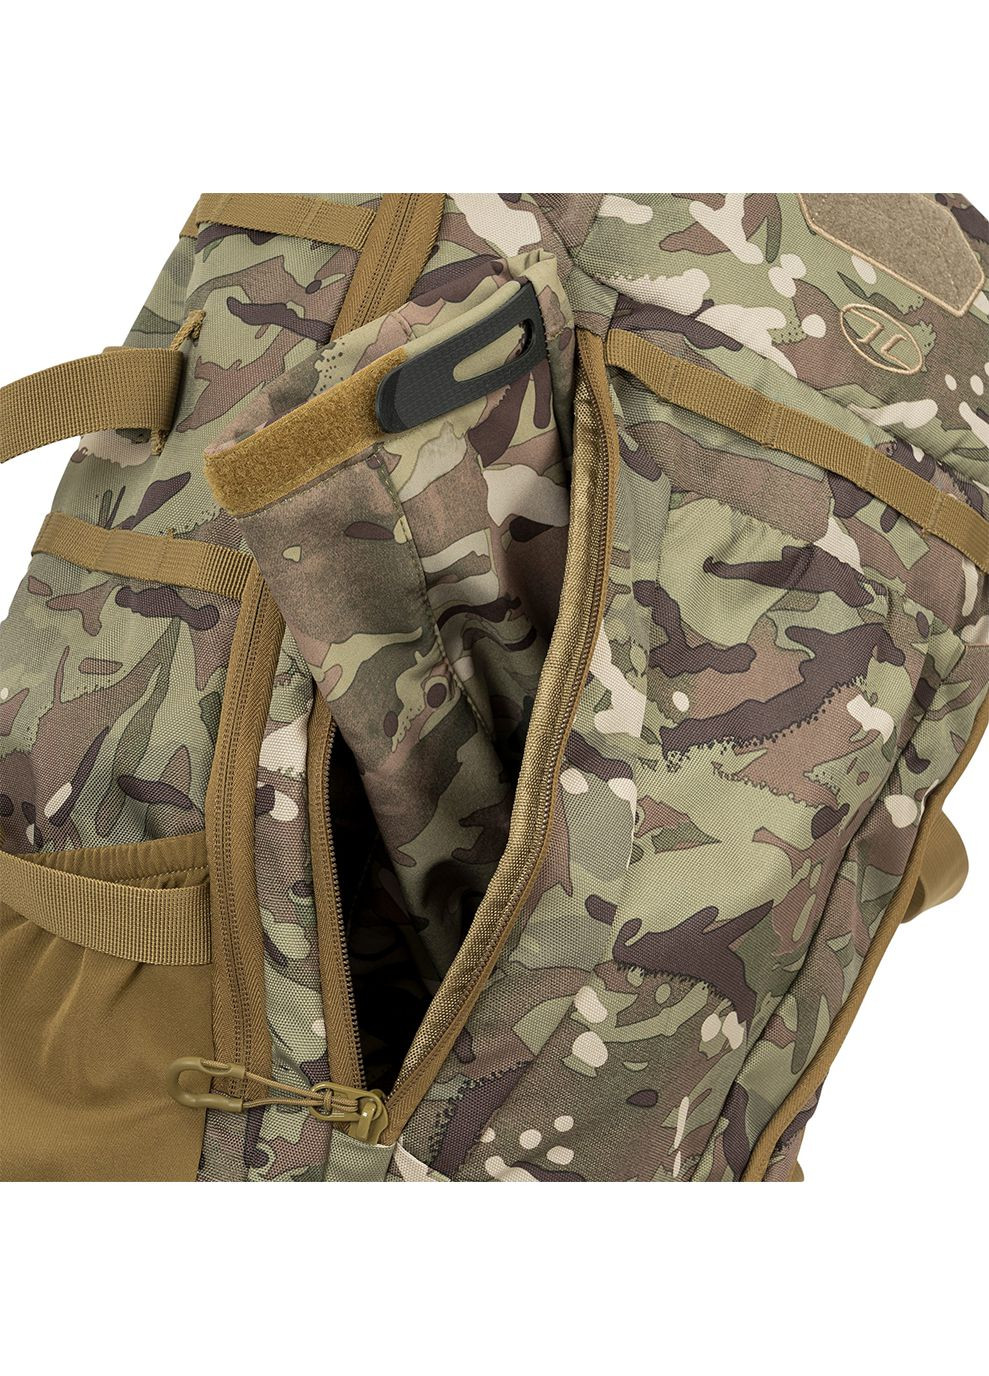 Рюкзак тактический Eagle 3 Backpack 40L HMTC Highlander (268833862)